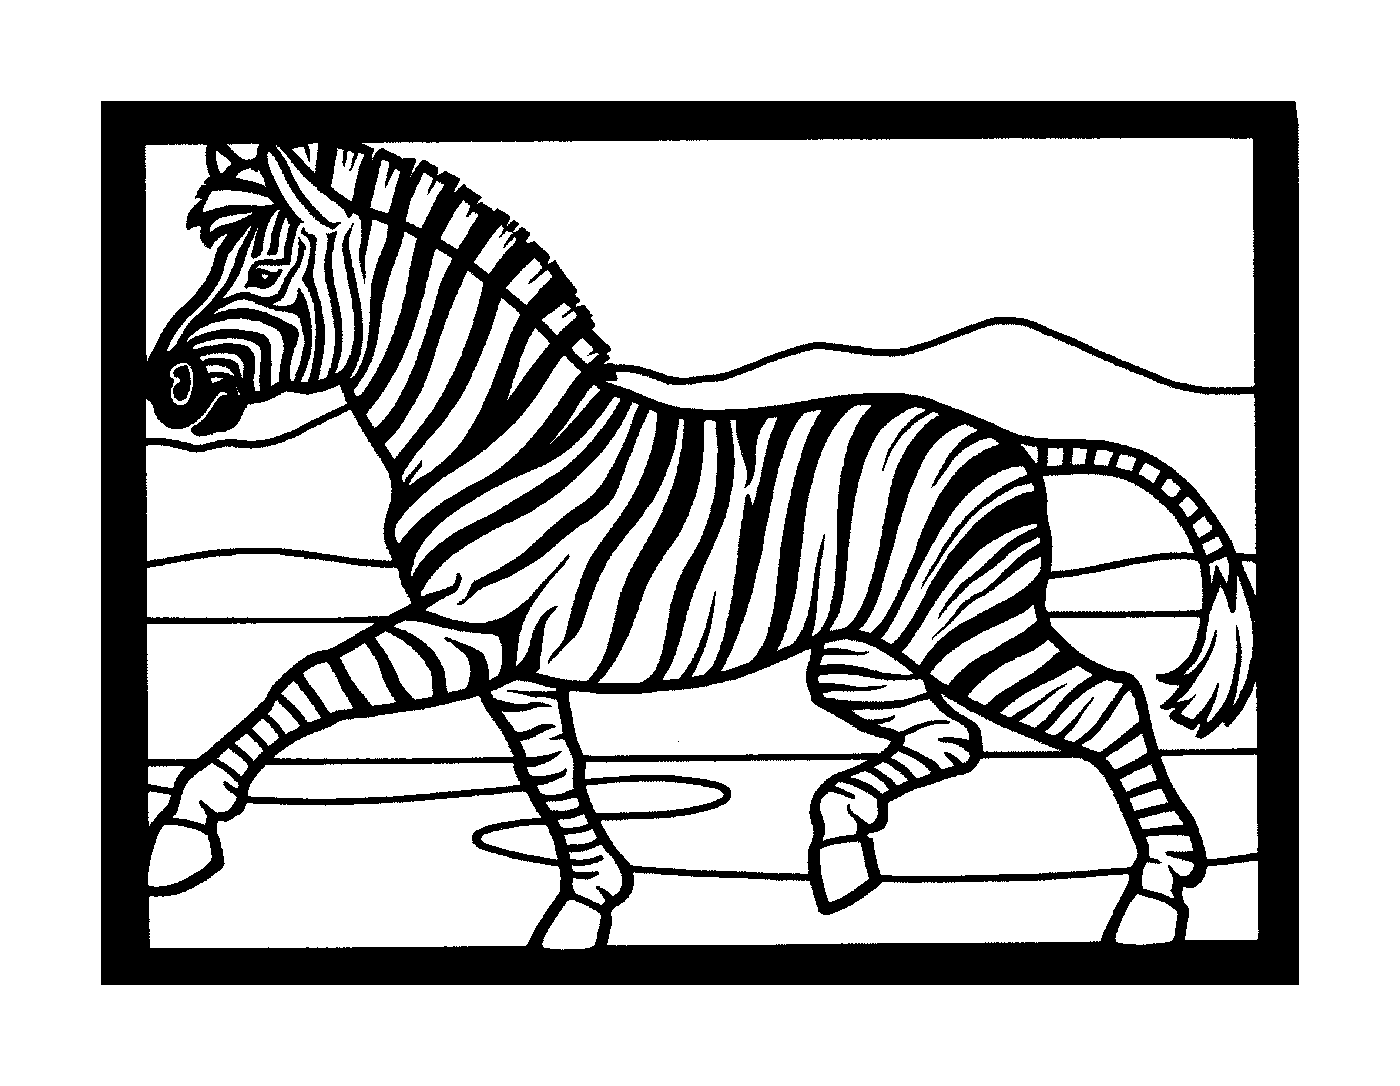  Zebra rápida no meio da corrida 